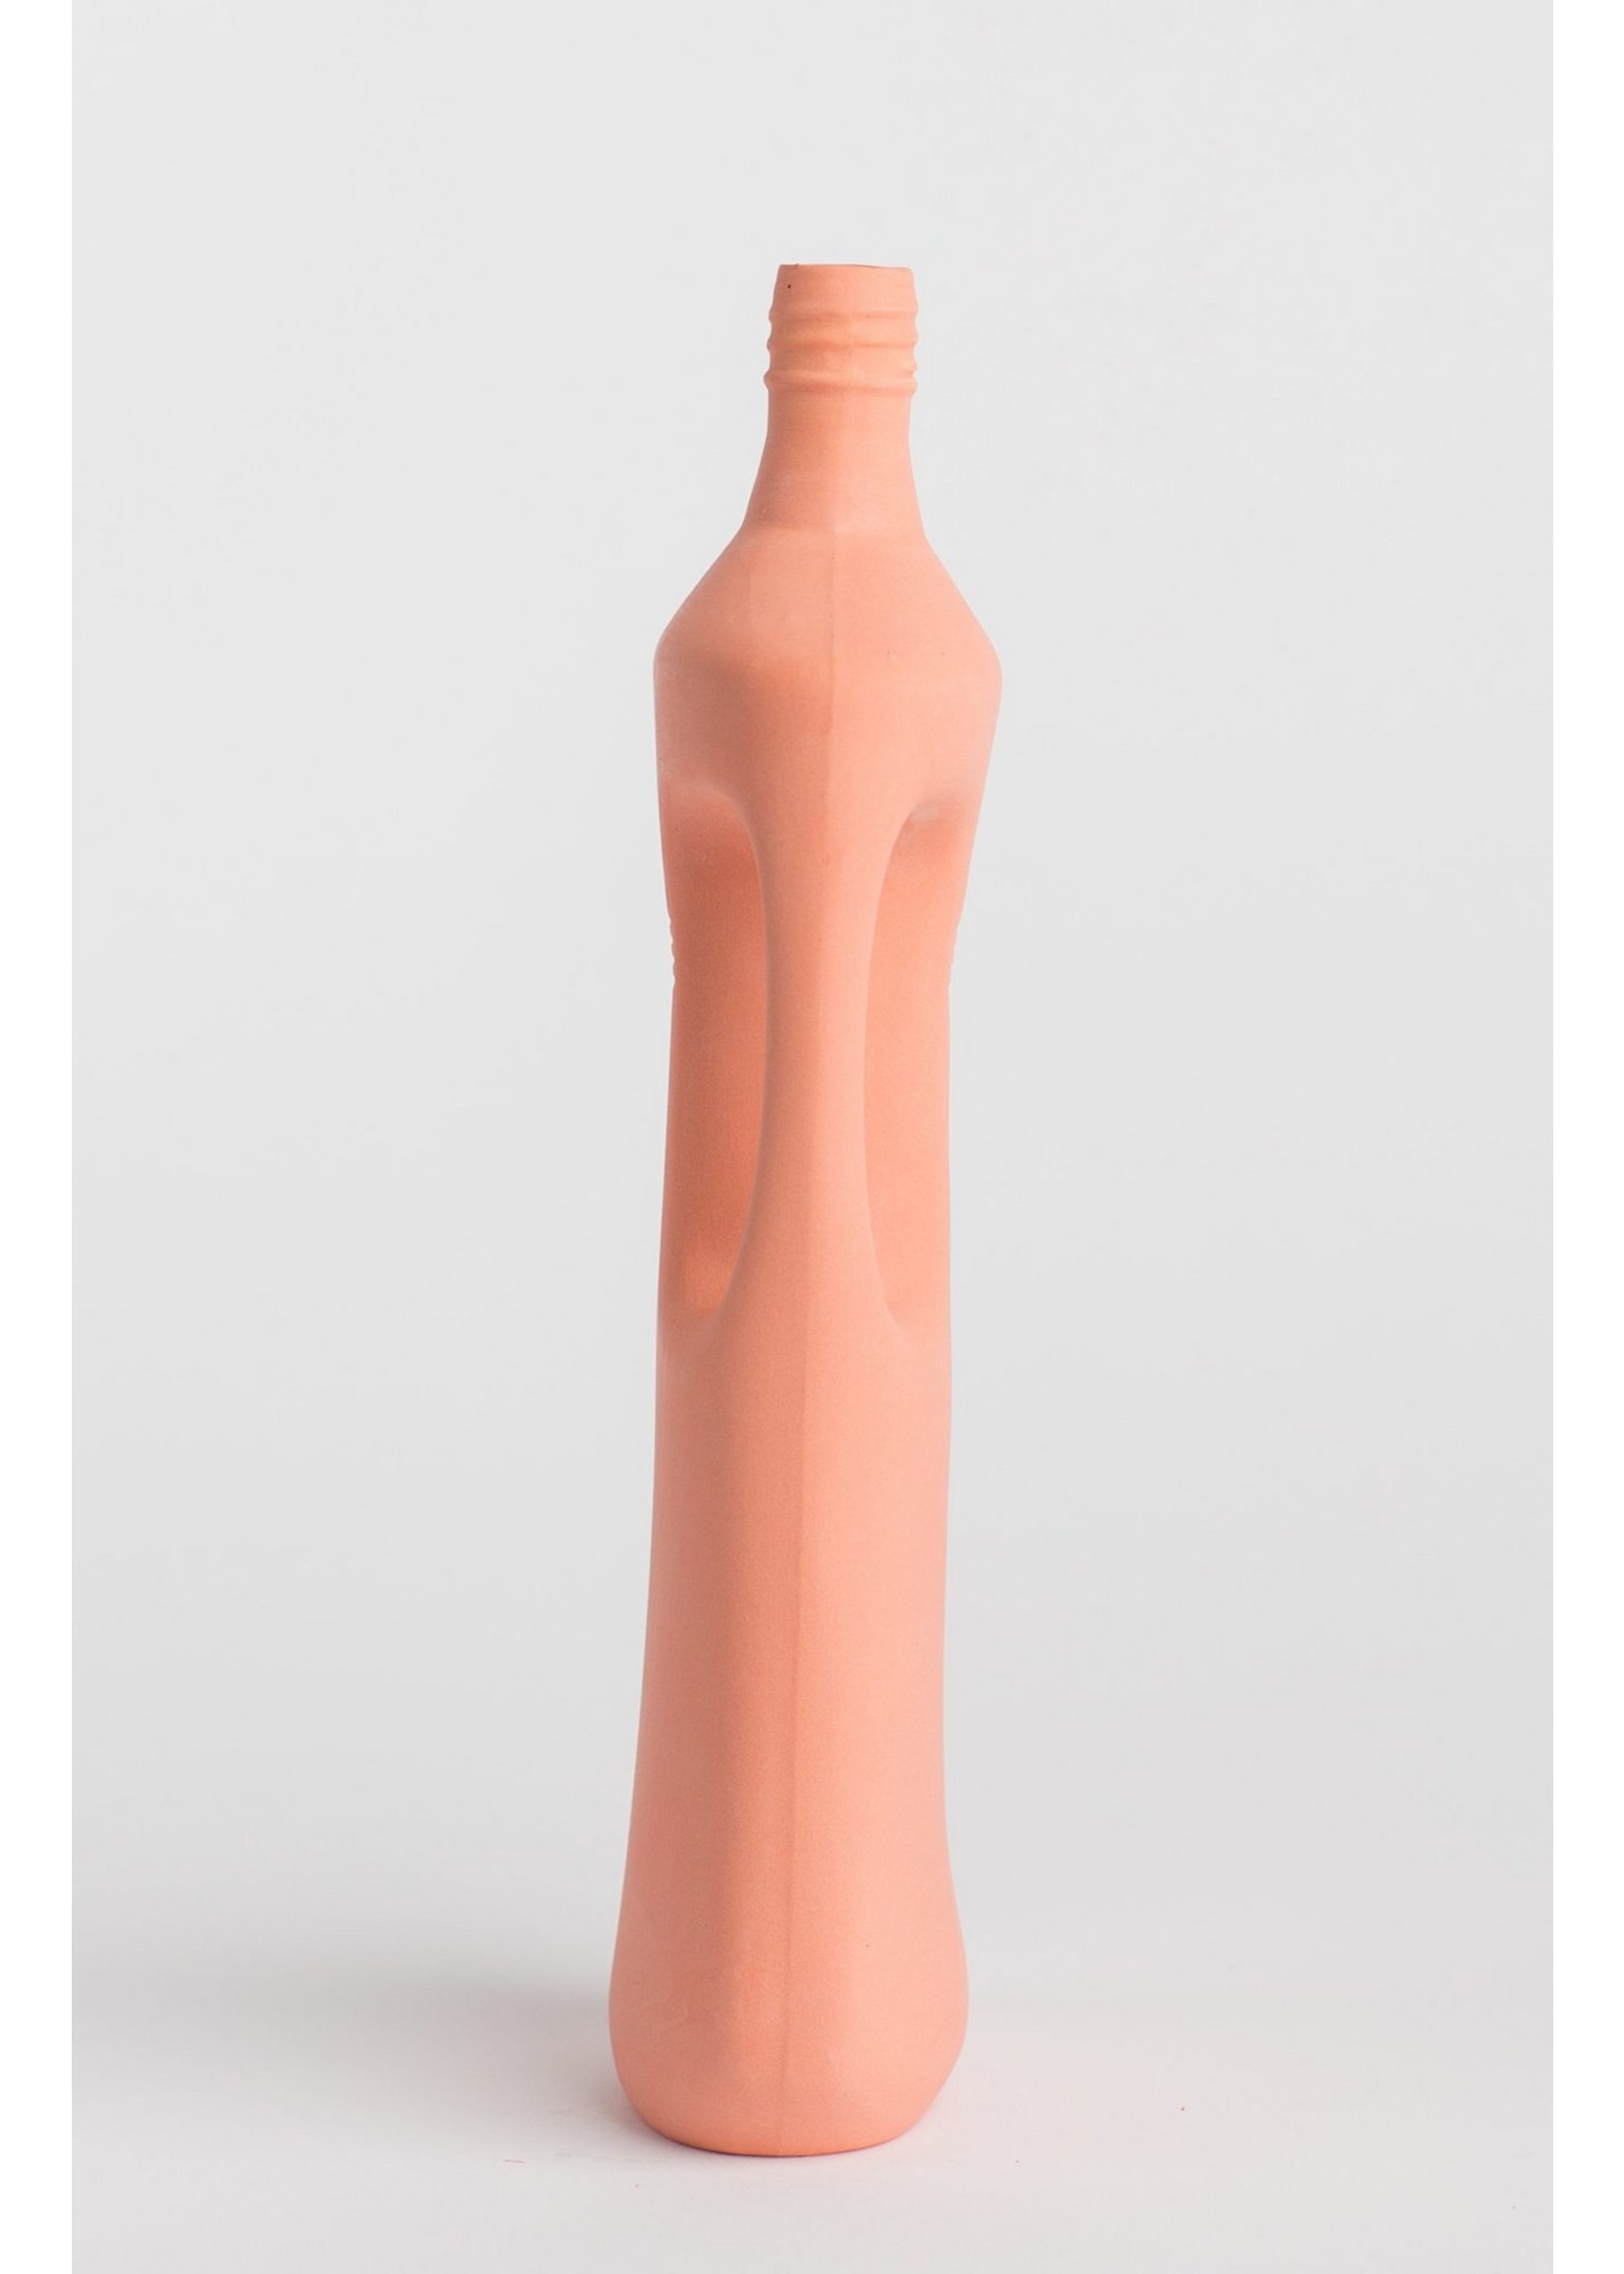 Foekje Fleur porcelain bottle vase #16 salmon